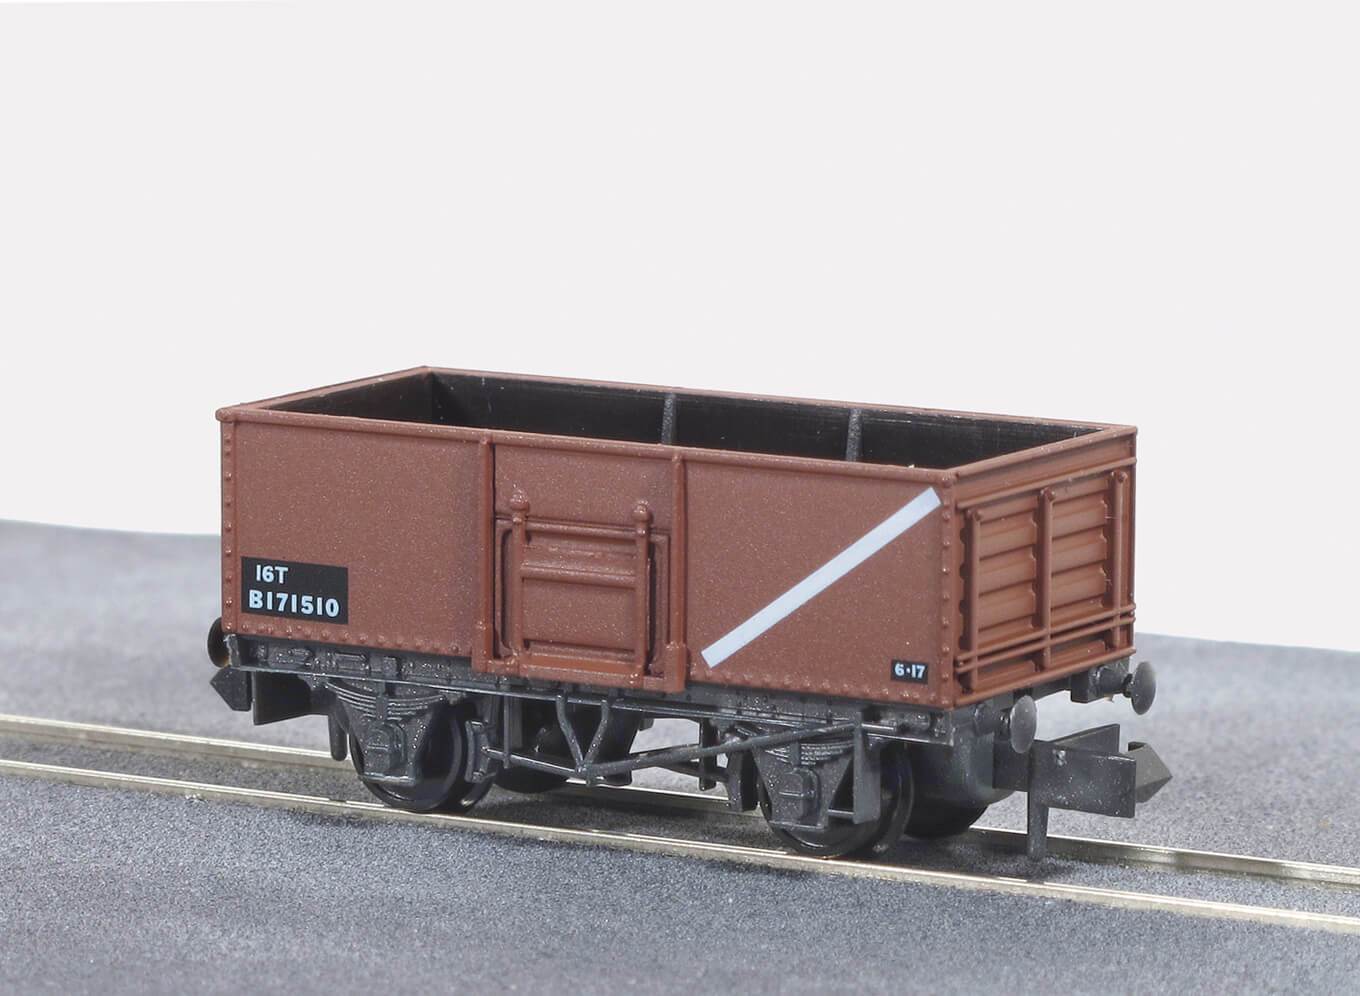 Butterley Steel Type Wagon No. B171510